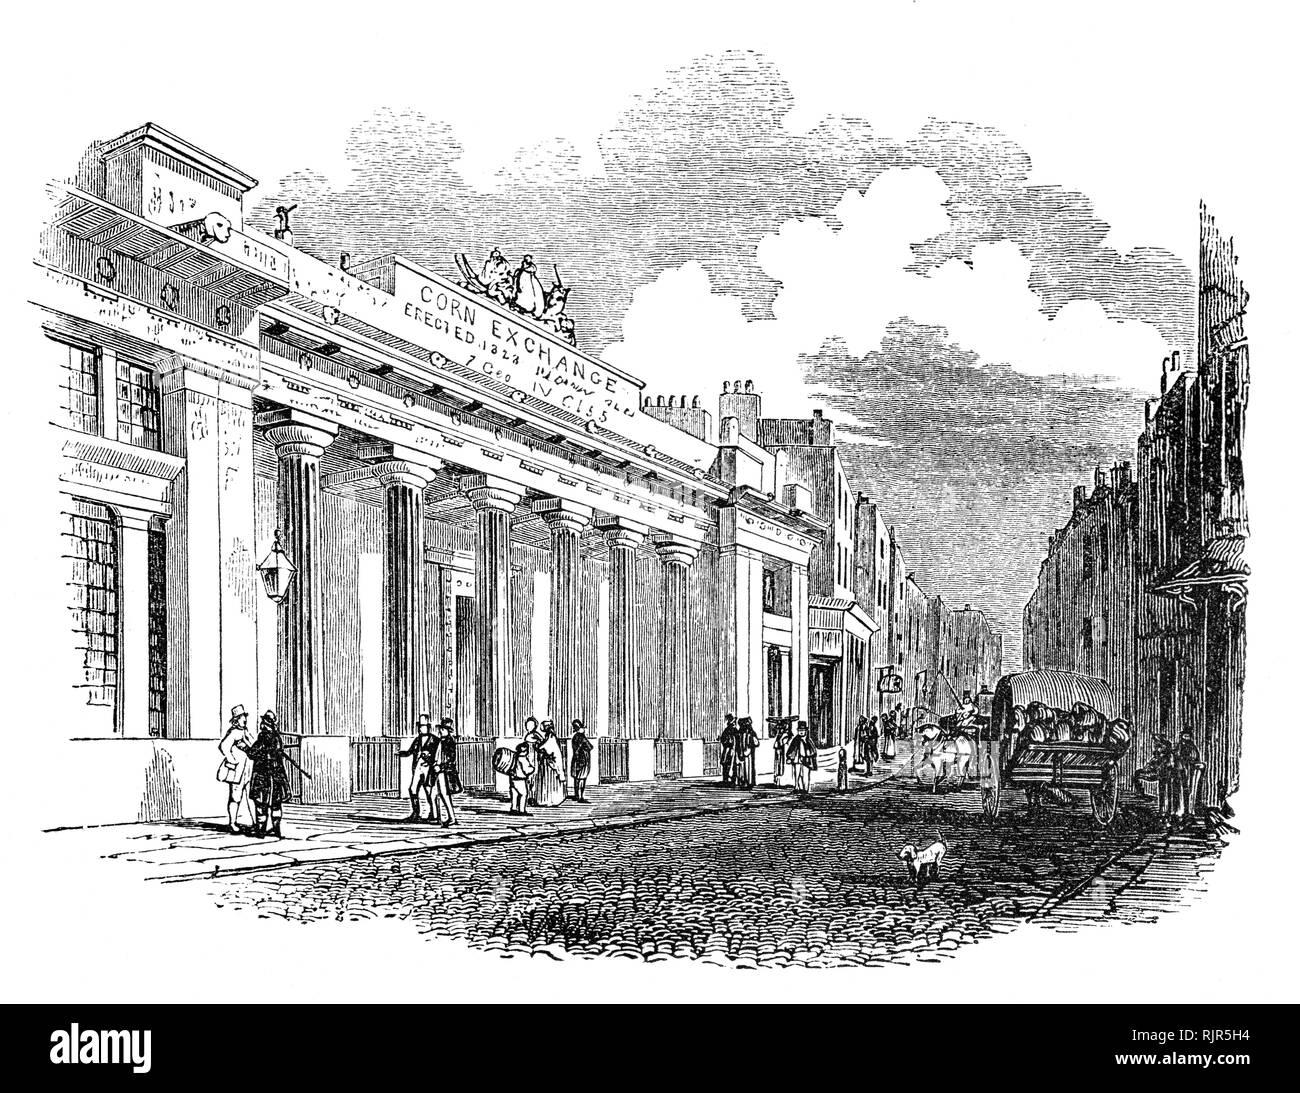 El Corn Exchange de Londres fue diseñado por George Dance el viejo en el estilo clásico, alrededor de un patio donde los comerciantes de maíz podrían reunirse y acordar precios con los agricultores para la venta de trigo, cebada y otros cultivos de maíz. En 1826, un rival exchange fue creada por un grupo de comerciantes descontentos (la London Corn Exchange) que estableció su 'nuevo', en cambio Mark Lane, inmediatamente junto a los 'viejos' exchange. Fue diseñado en el estilo griego, George Smith y abrió sus puertas en 1828. En 1882, el 'Viejo Intercambio" fue en gran parte destruido y reemplazado por un edificio mucho mayor (diseñado por Edward Foto de stock